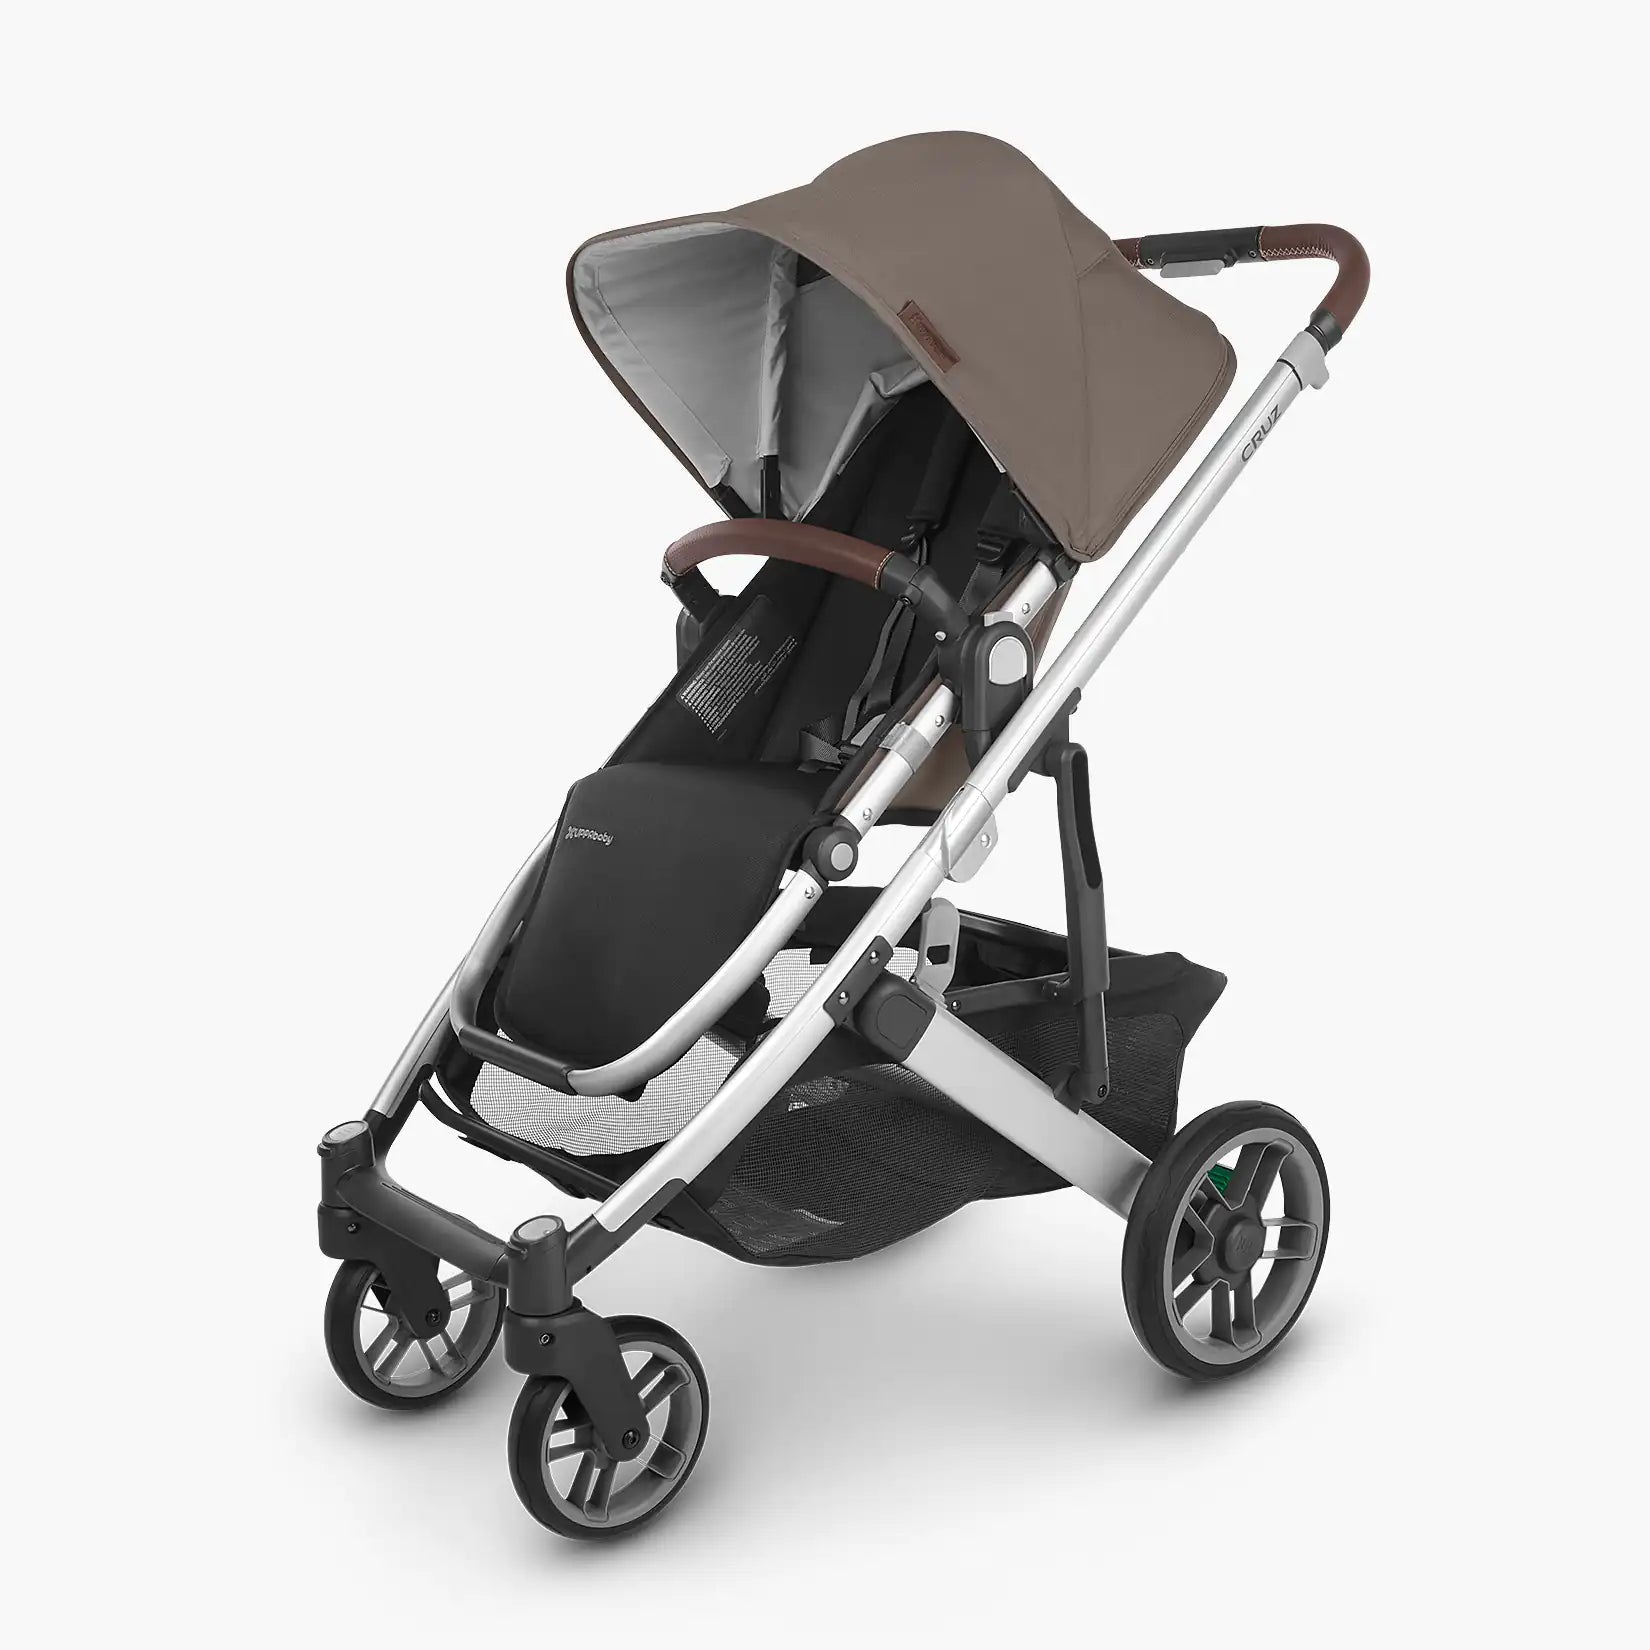 UPPAbaby CRUZ V2 Stroller - ANB Baby -810030098867$500 - $1000